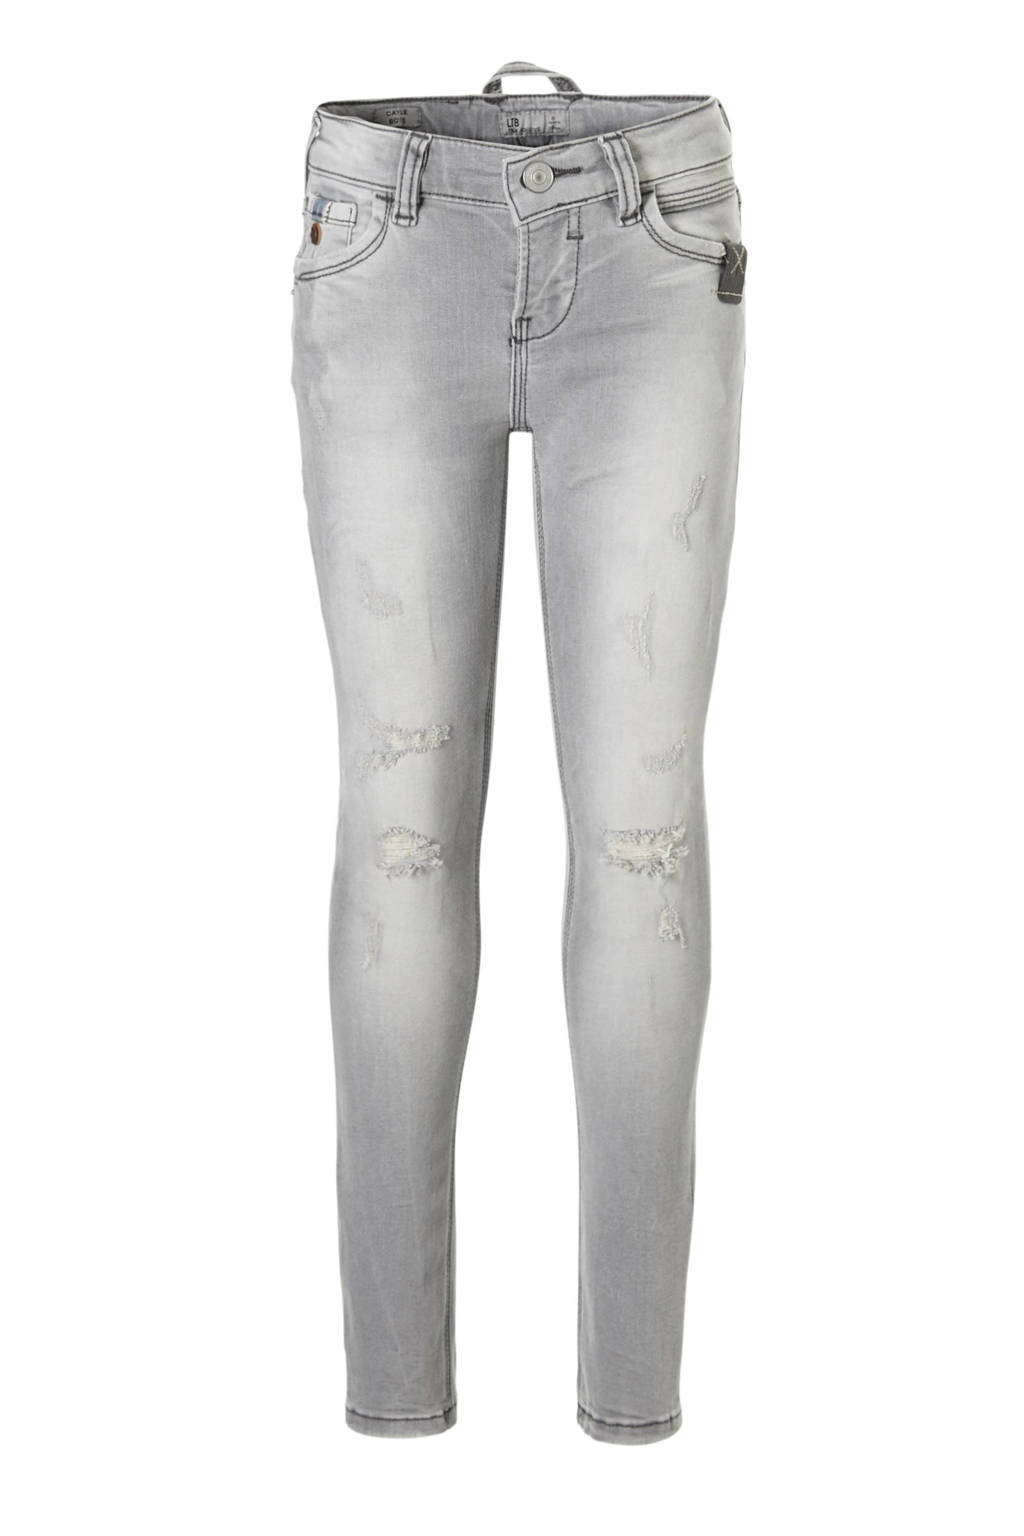 LTB skinny jeans Cayle met slijtage details sound grey wash, Sound grey wash